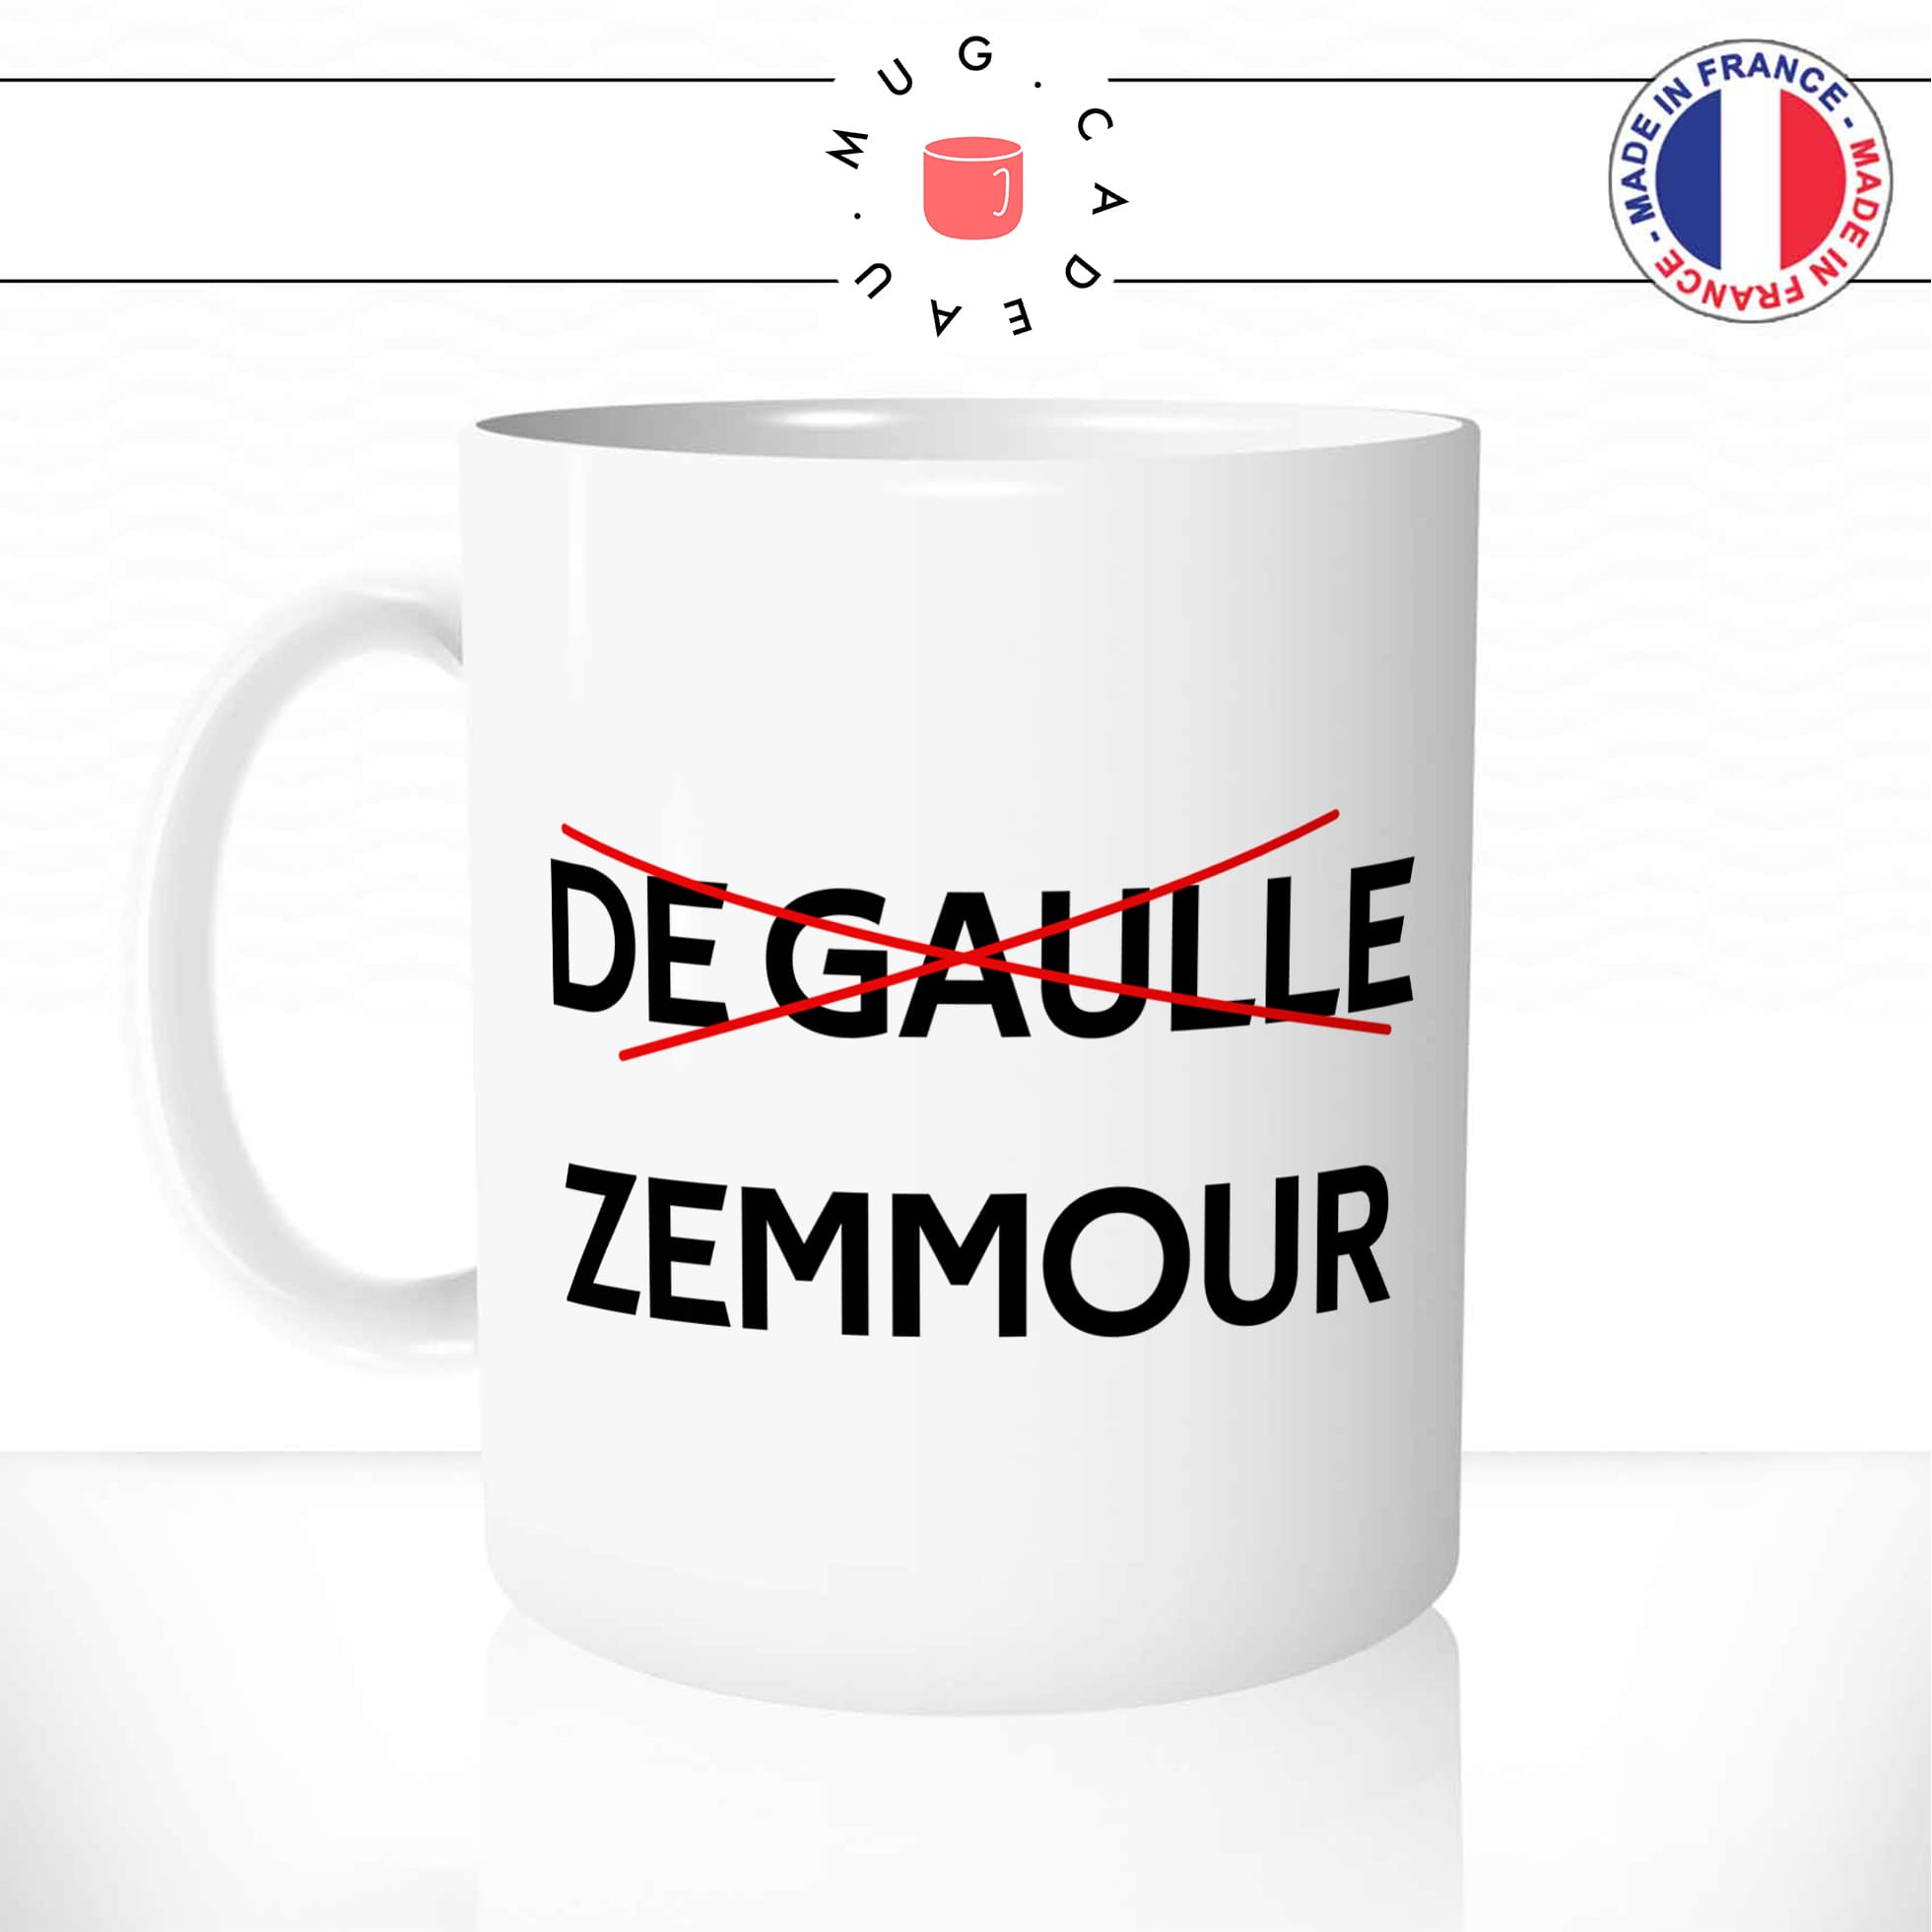 mug-tasse-blanc-brillant-général-de-gaulle-president-francais-eric-zemmour-ecrivain-candidat-france-humour-idée-cadeau-originale-fun-unique